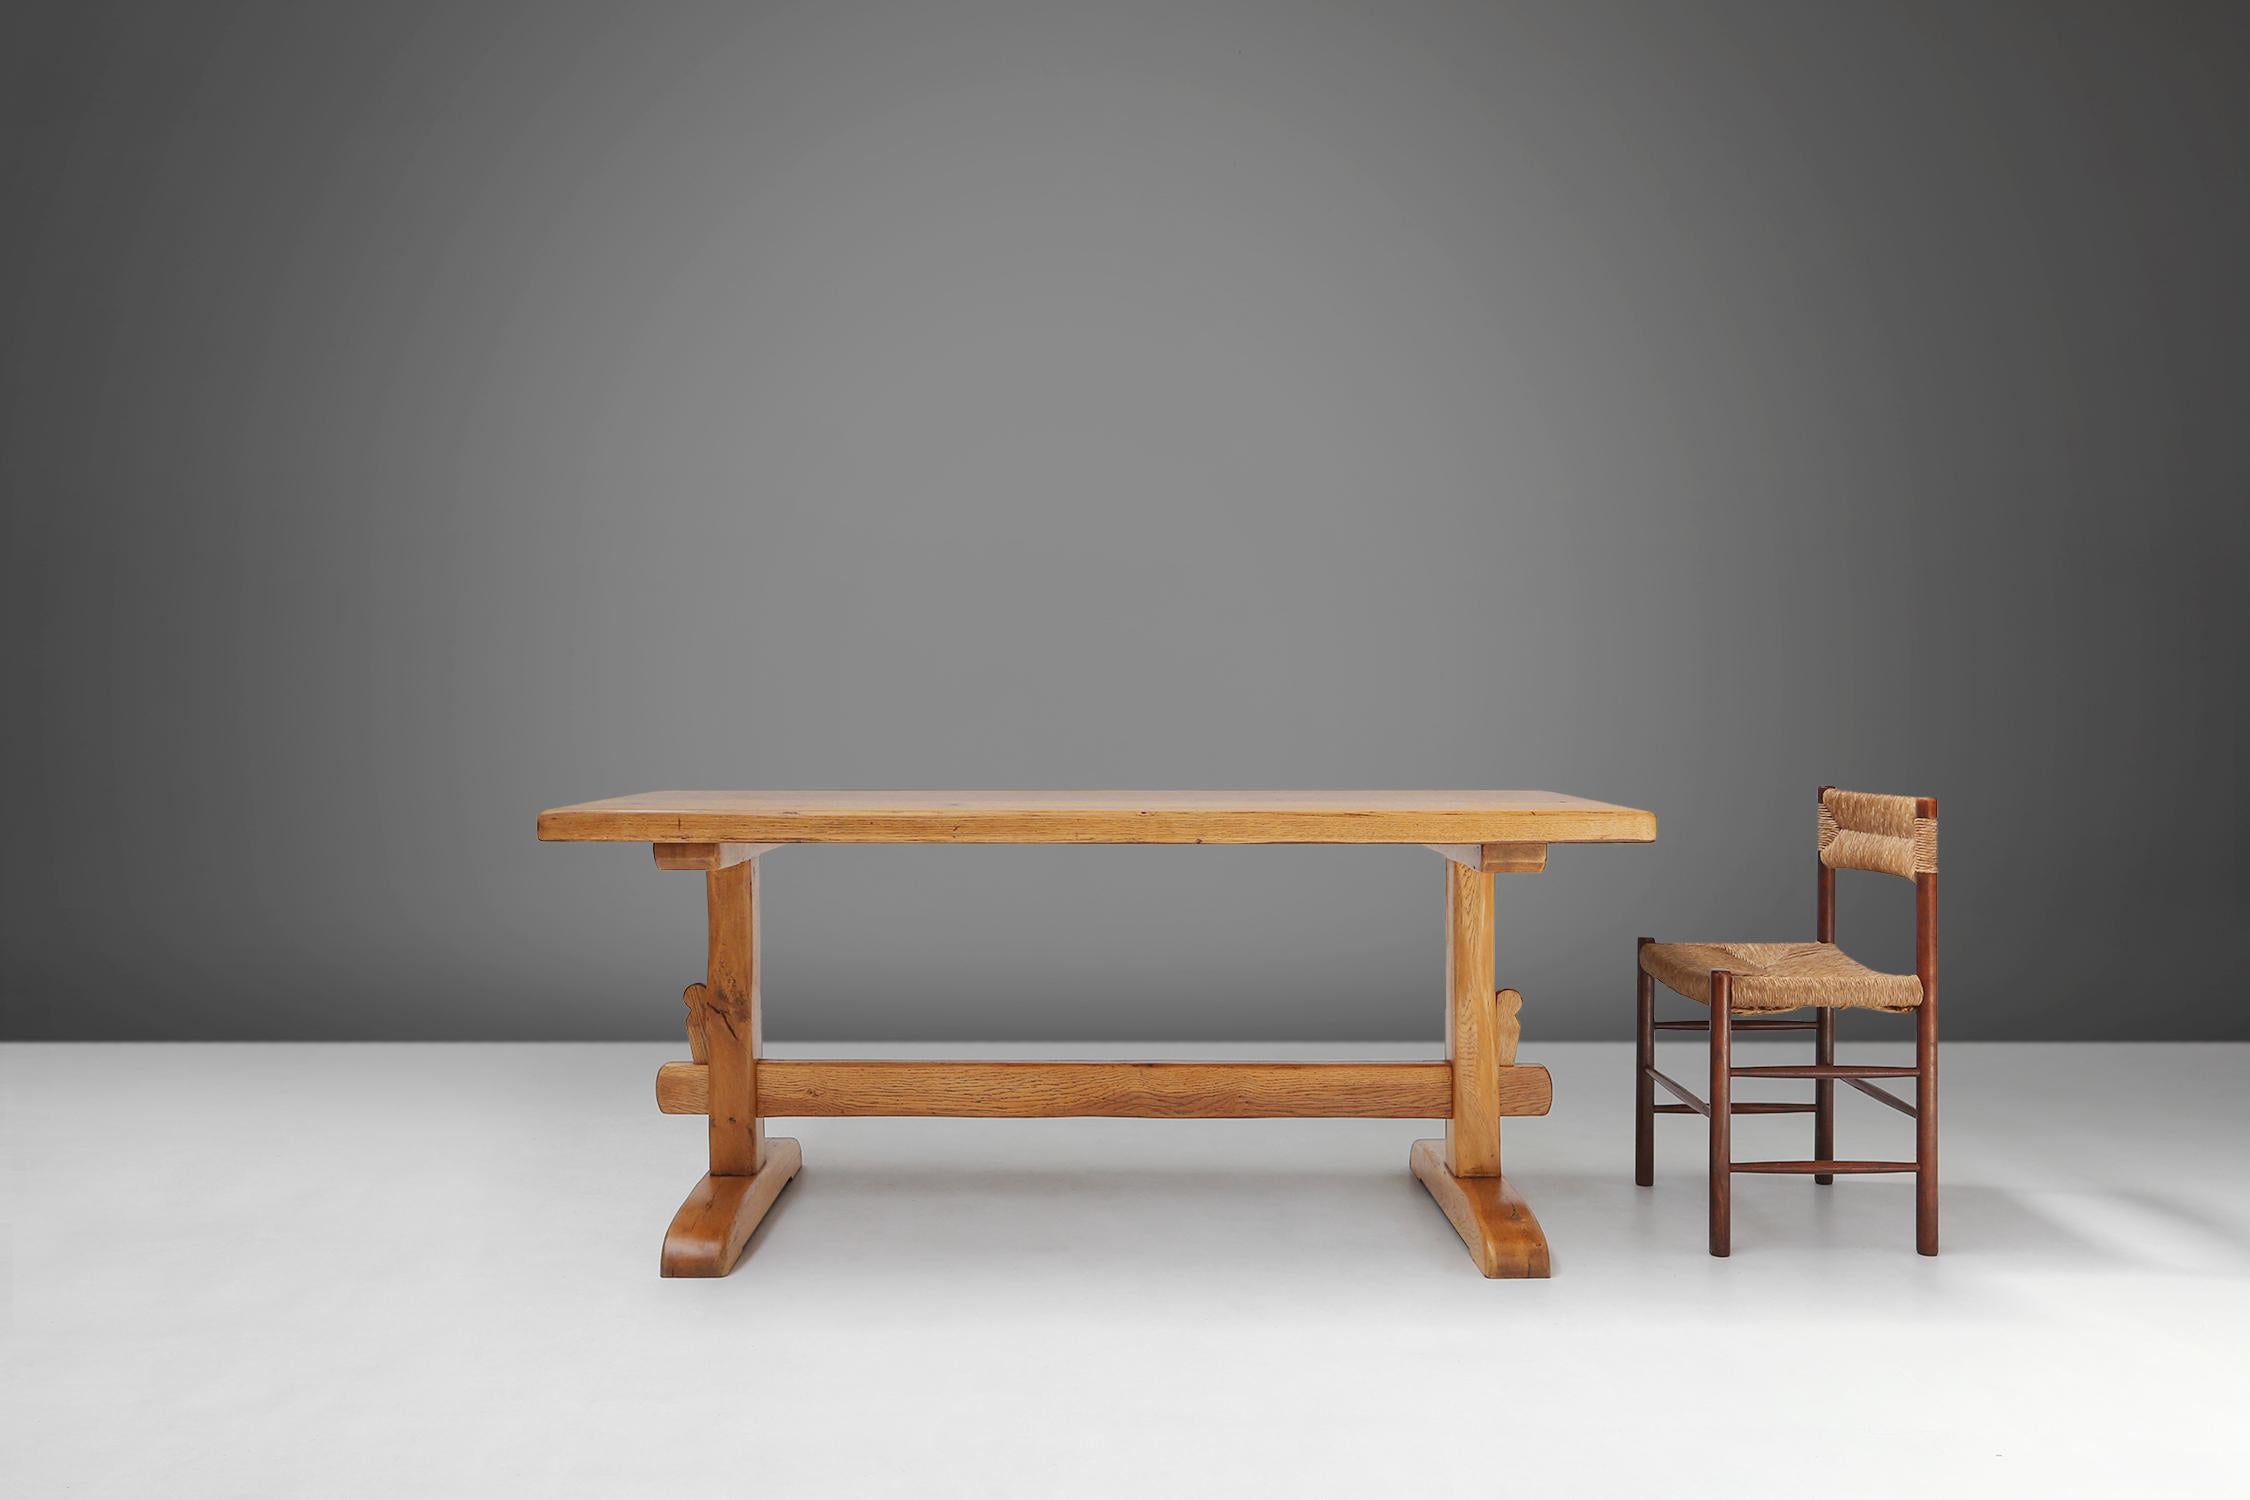 Cette table française est fabriquée en chêne massif des années 1960, ce qui lui confère un aspect chaleureux et naturel.
Le bois présente un beau veinage et une légère patine qui attestent de l'ancienneté et du caractère de la table.

La table a un